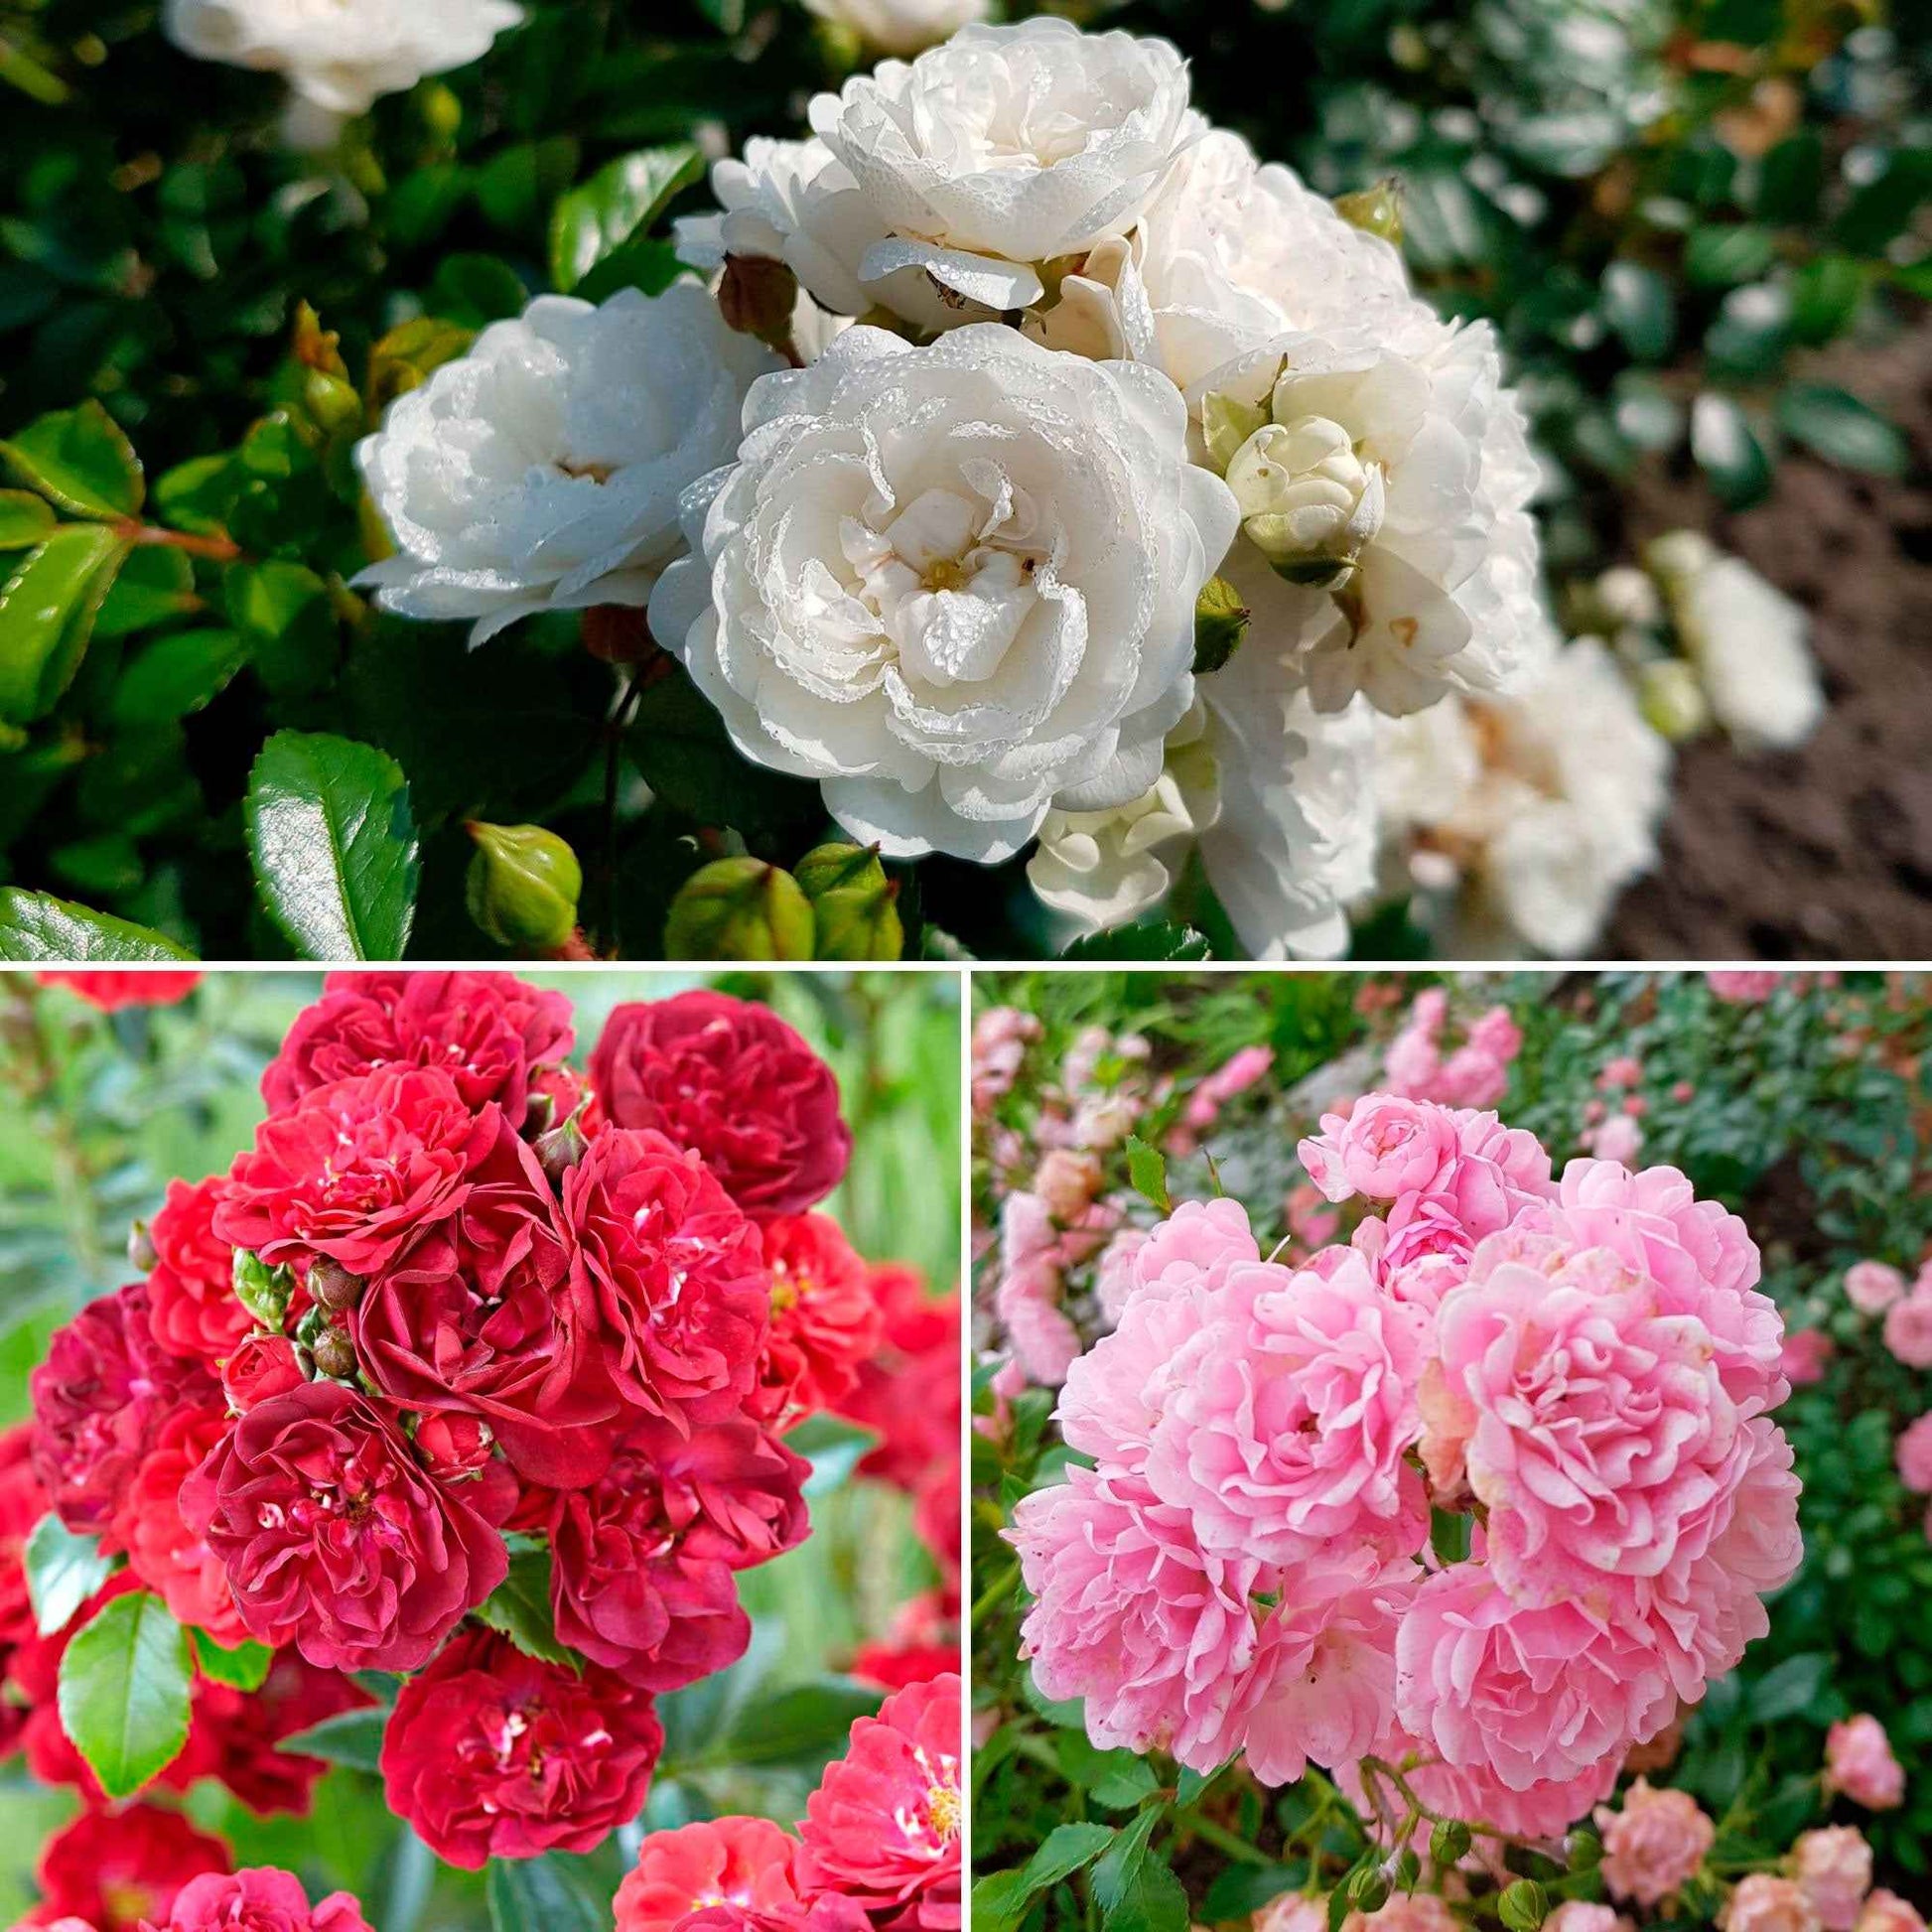 3x Rosier couvre-sol - Mélange 'Couvre-sol' Blanc-Rouge-Rose  - Plants à racines nues - Couvre-sols